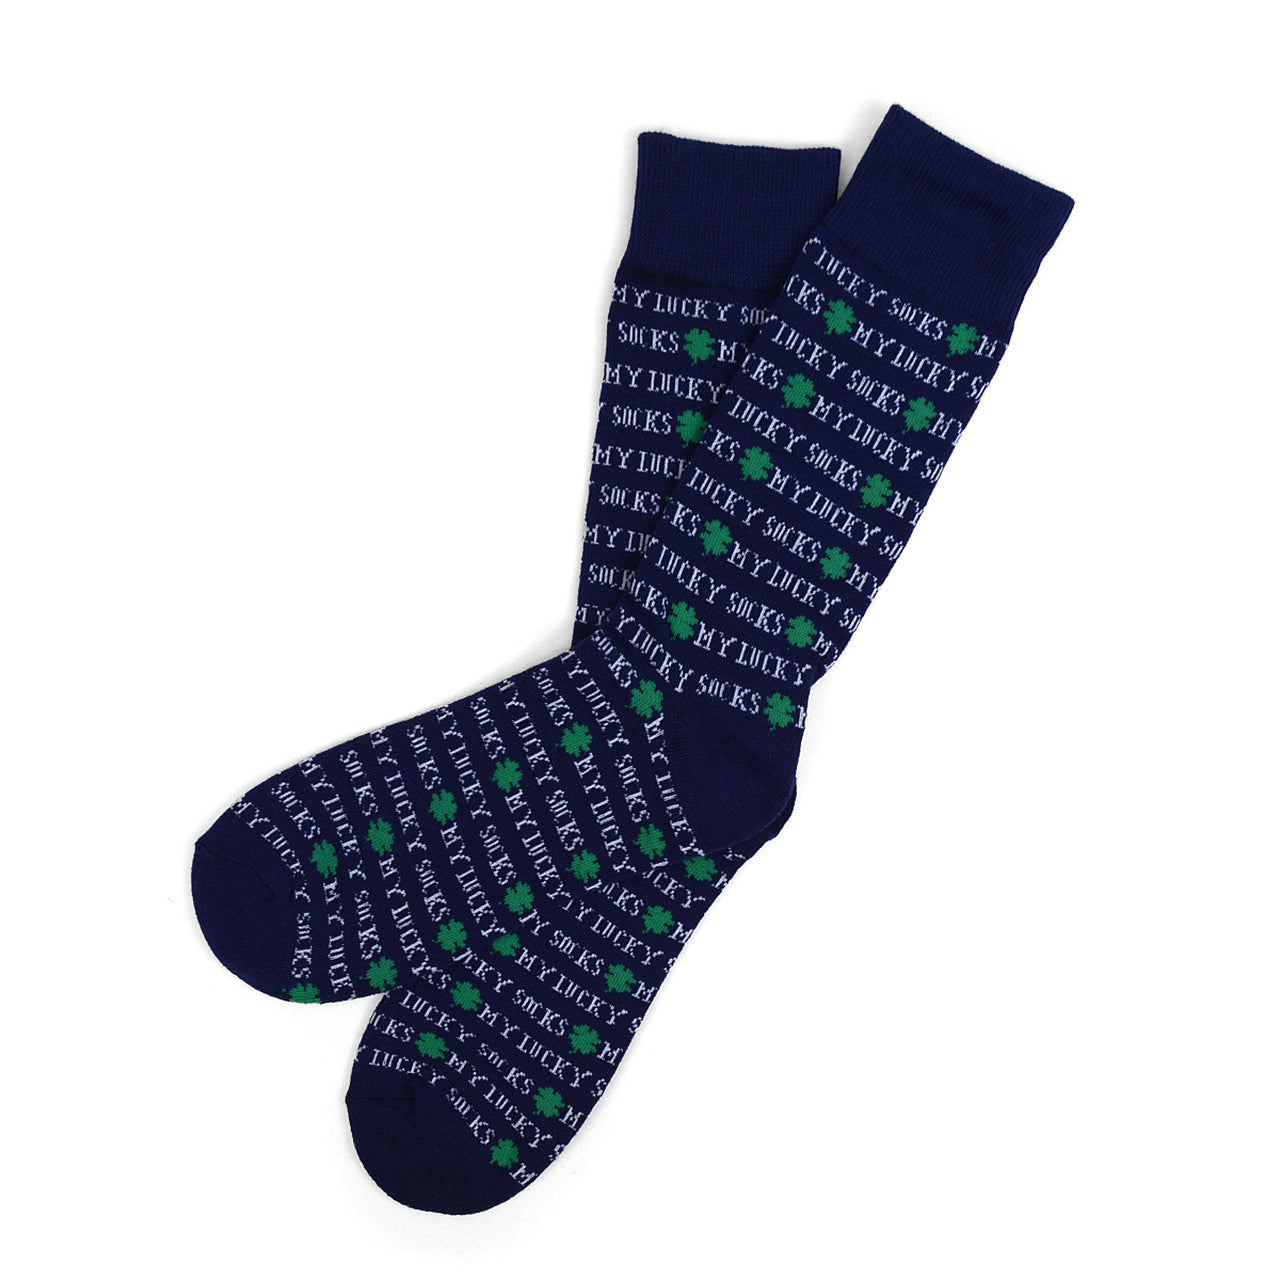 Men's St. Patrick's Day "My Lucky Socks"  Sock